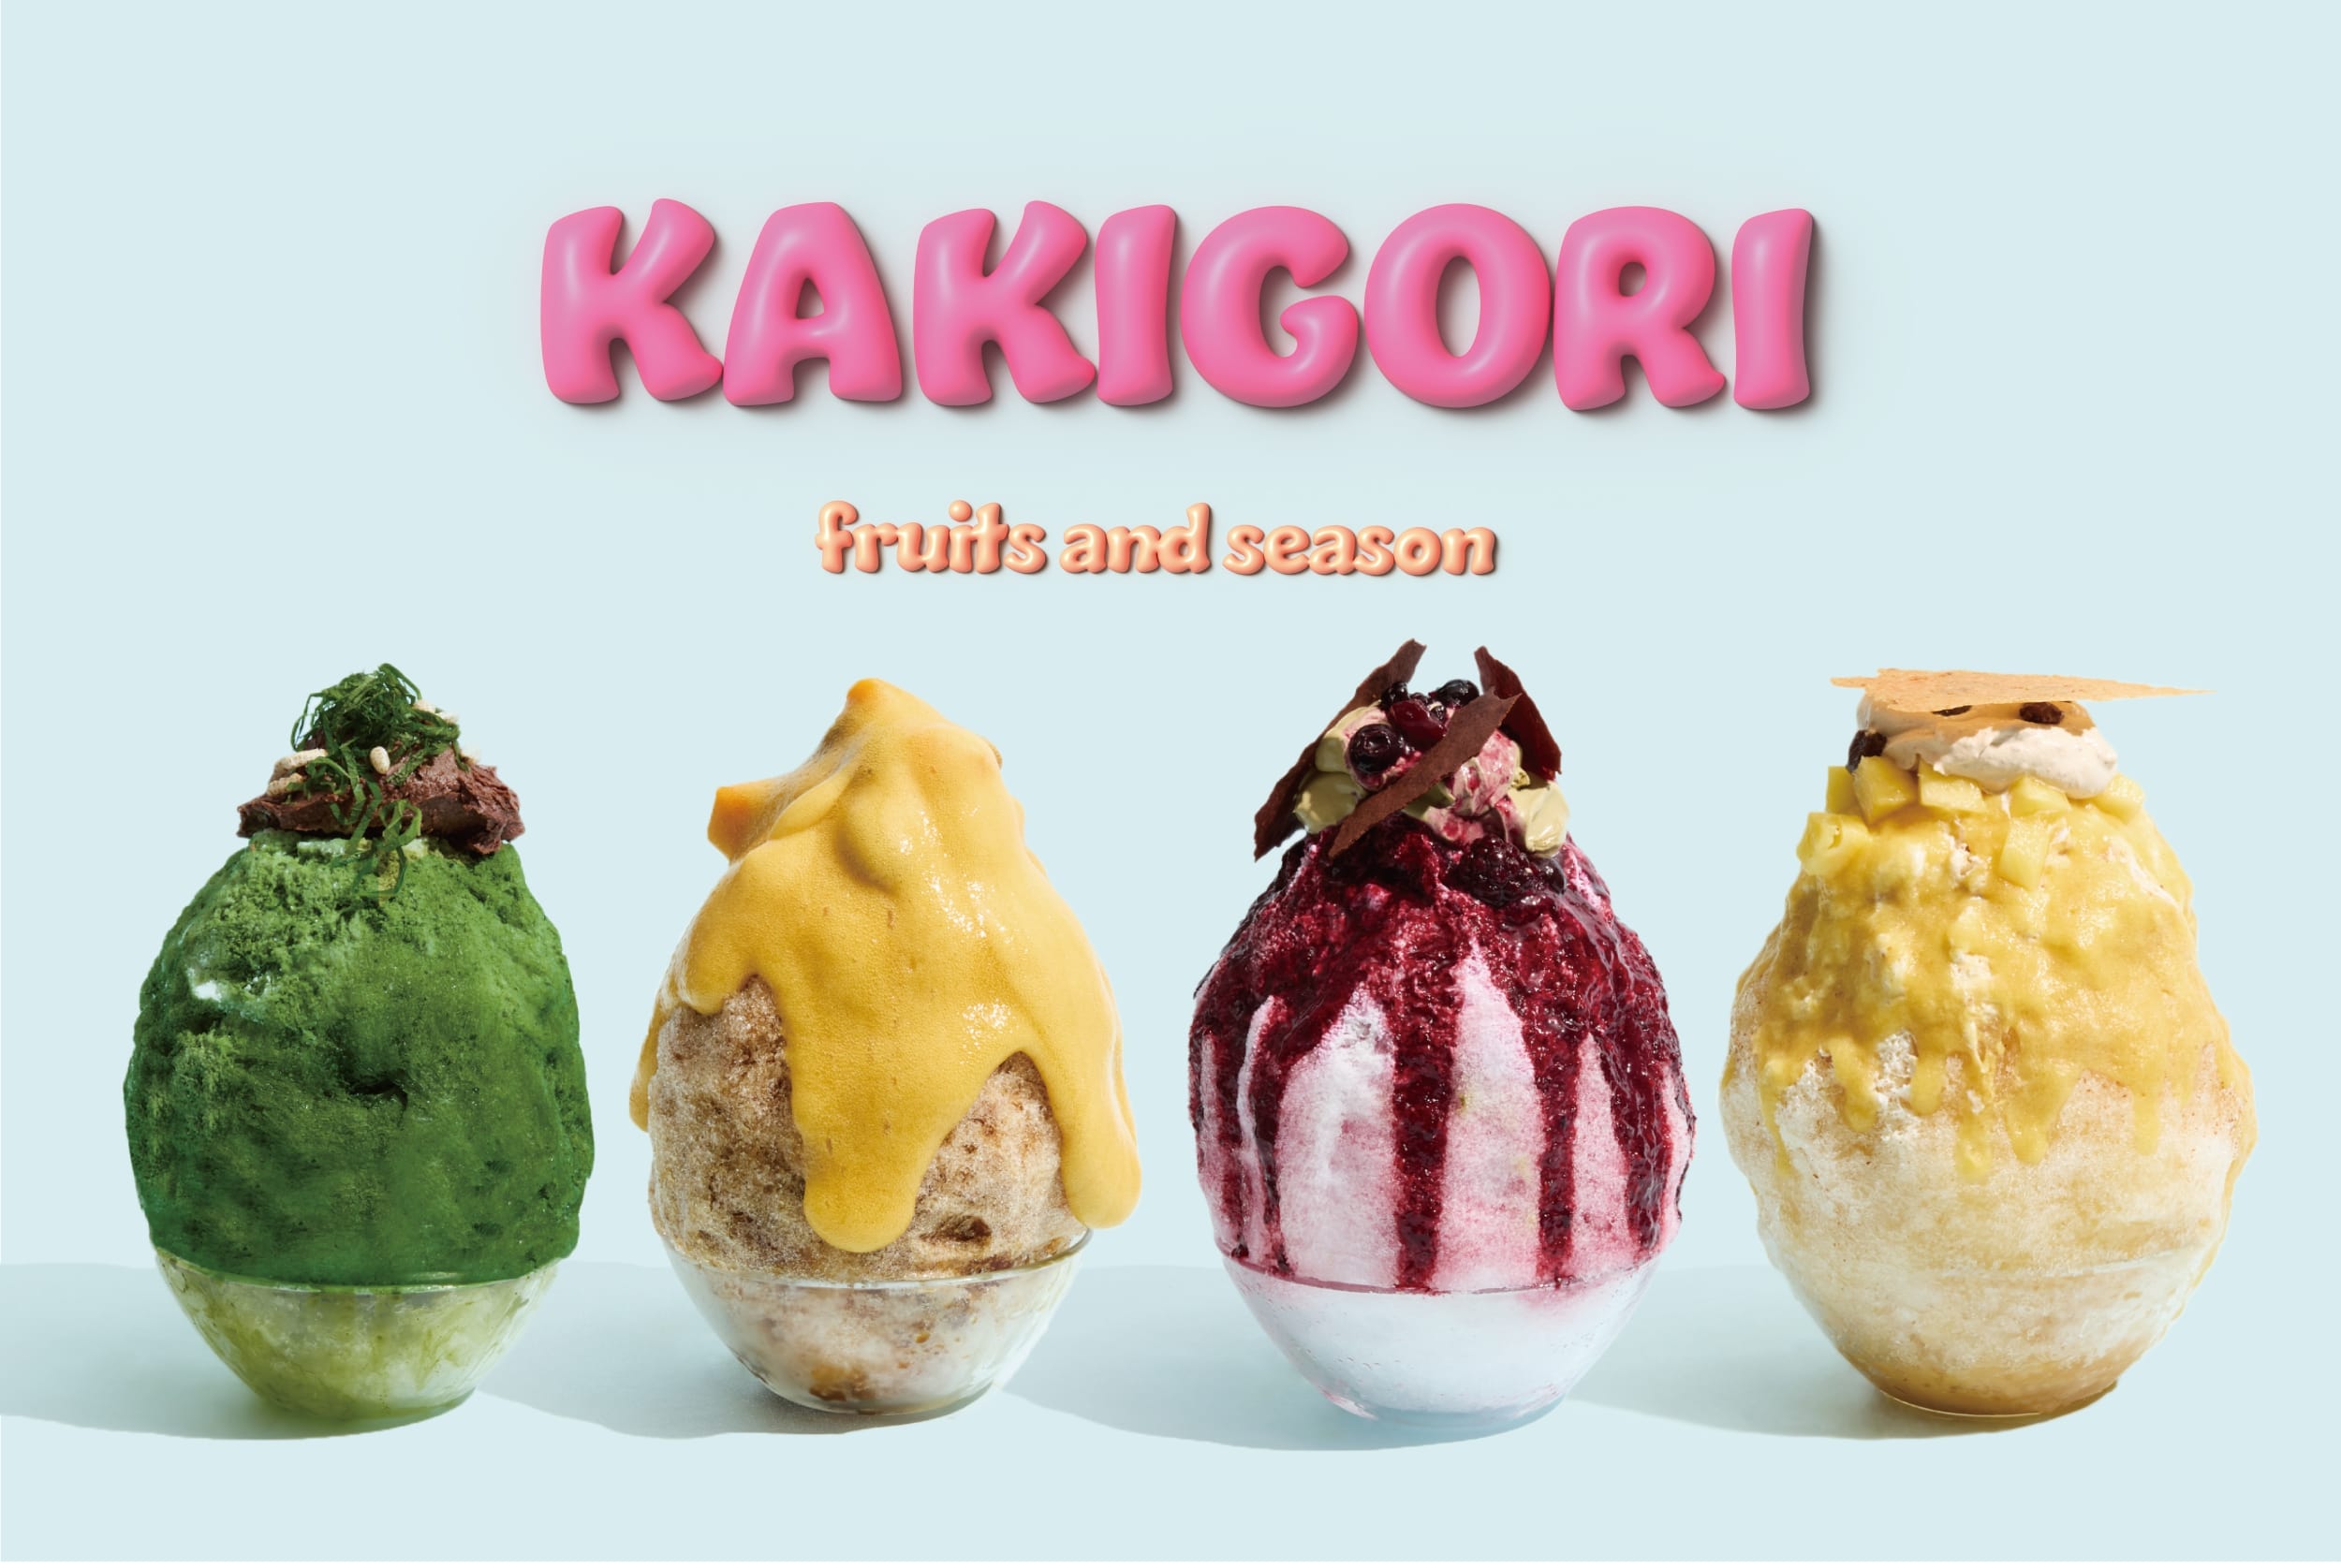 東京・恵比寿の「フルーツアンドシーズン（fruits and season）」は、夏季限定のかき氷4種「Matcha / 抹茶」、「Mango / マンゴー」、「Raspberry / ラズベリー」、「Pineapple / パイナップル」を提供する。価格はいずれも税込み2,000円。